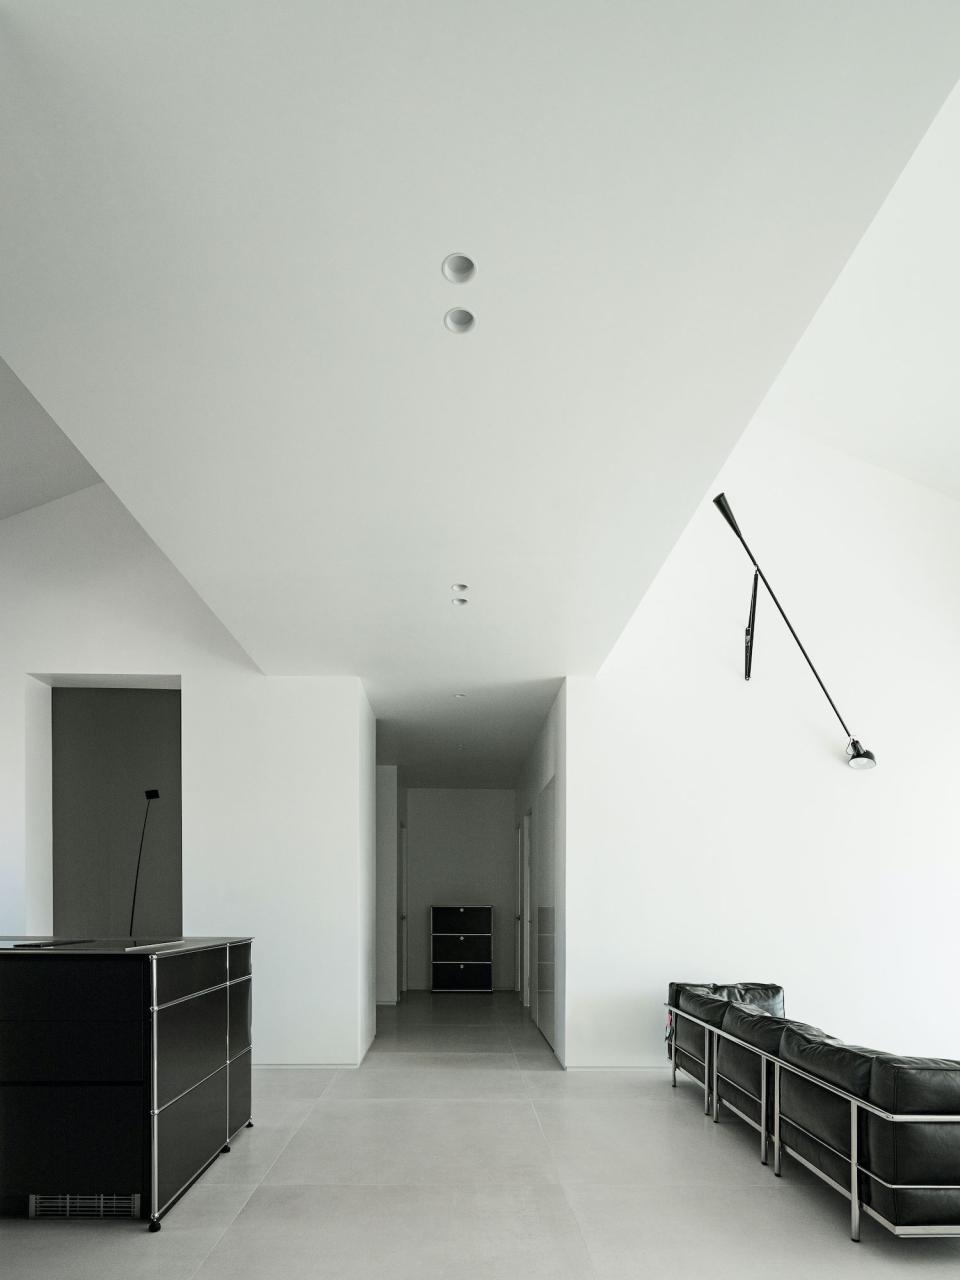 公寓设计,顶层公寓设计案例,oftn studio,165㎡,韩国,首尔,极简主义,极简风格,USM家具